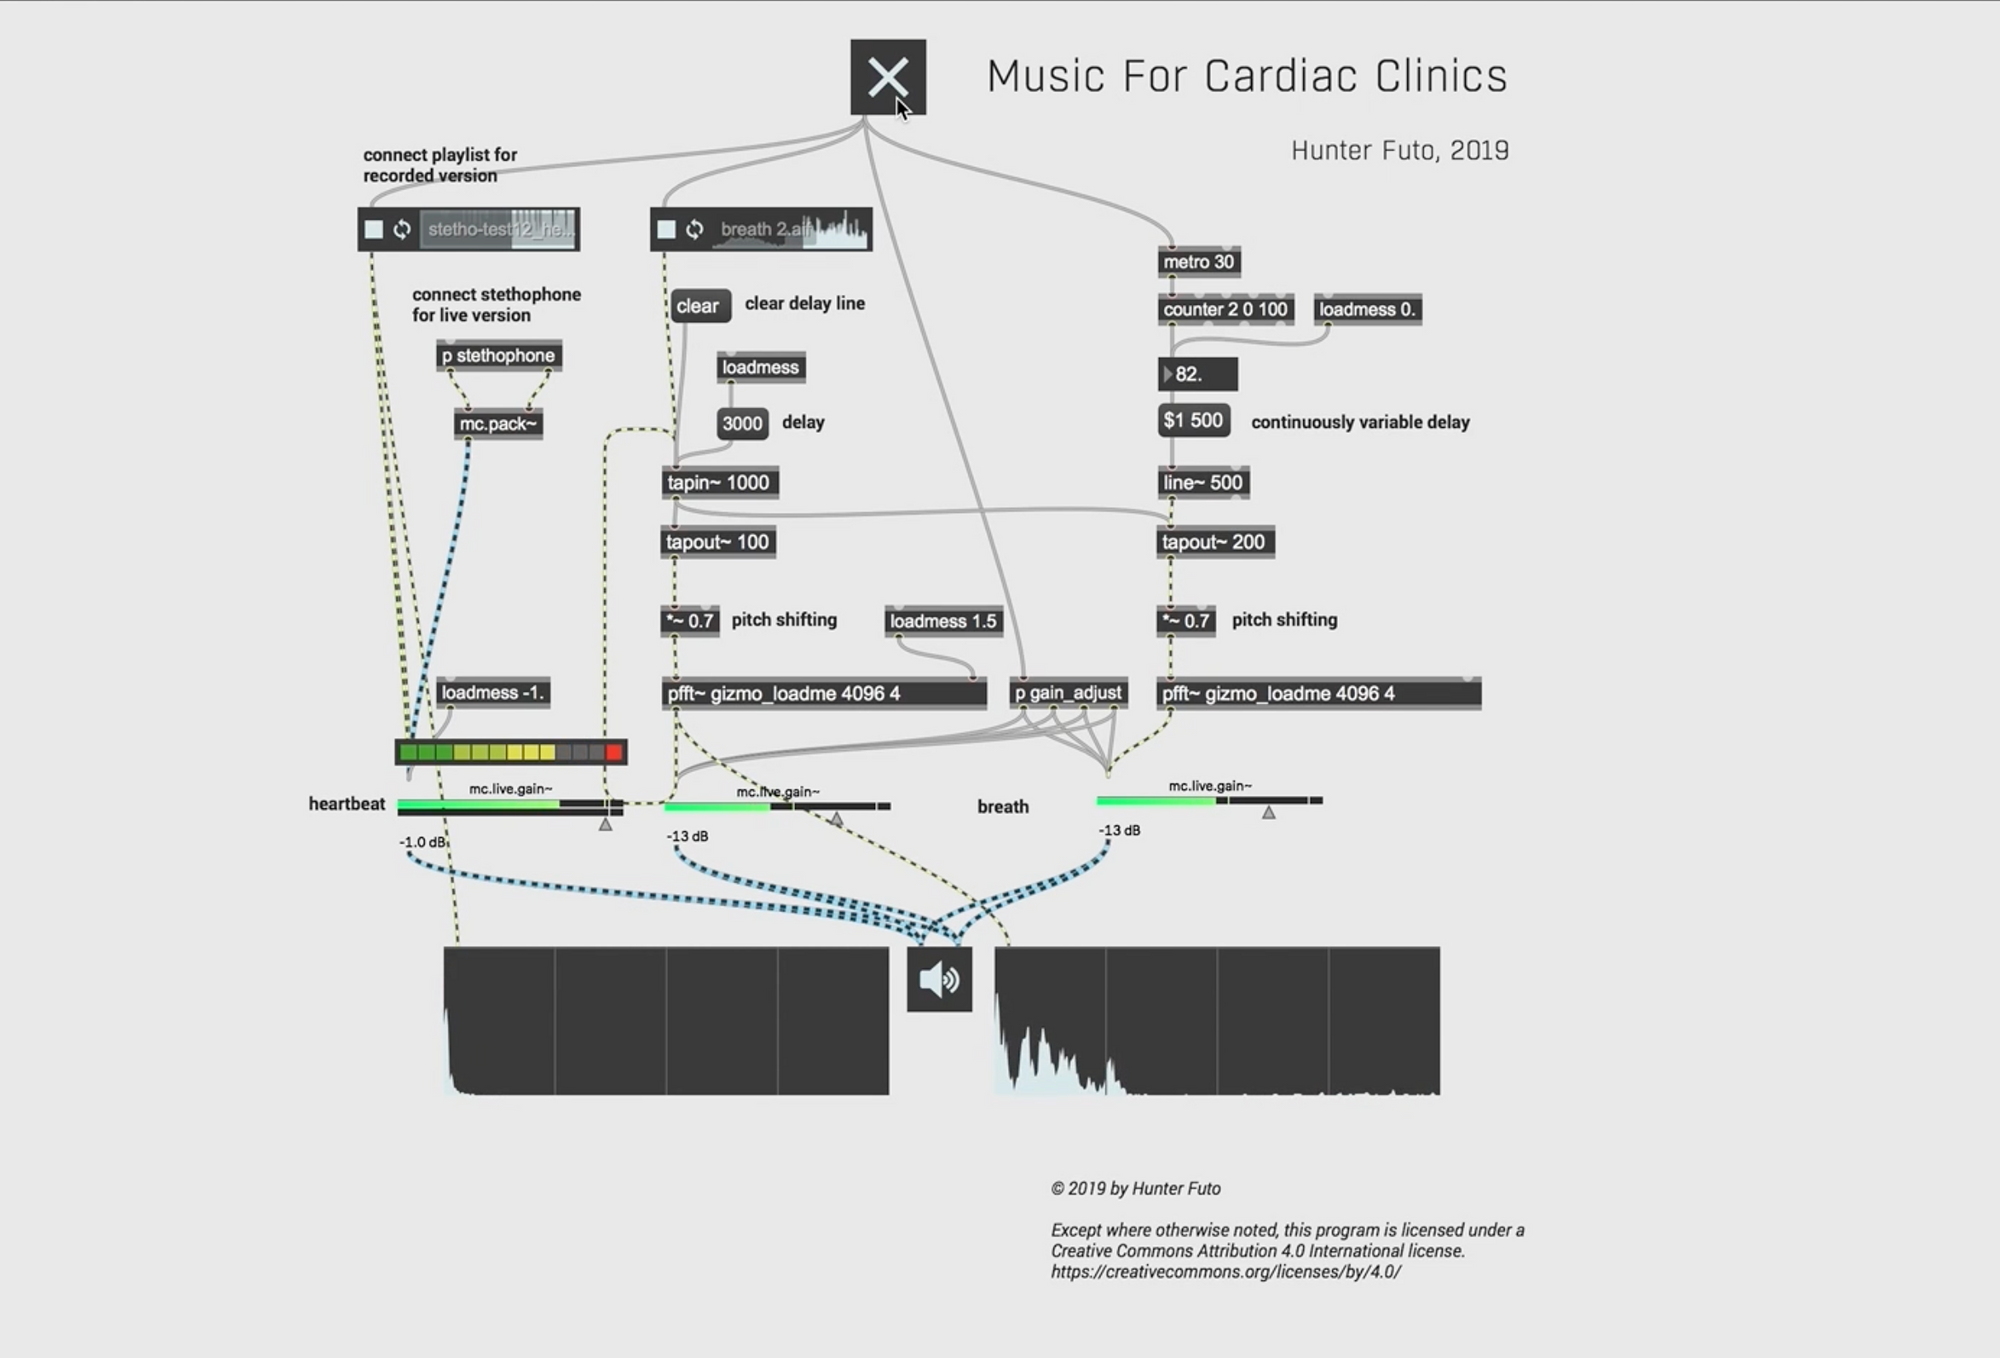 Music for Cardiac Clinics